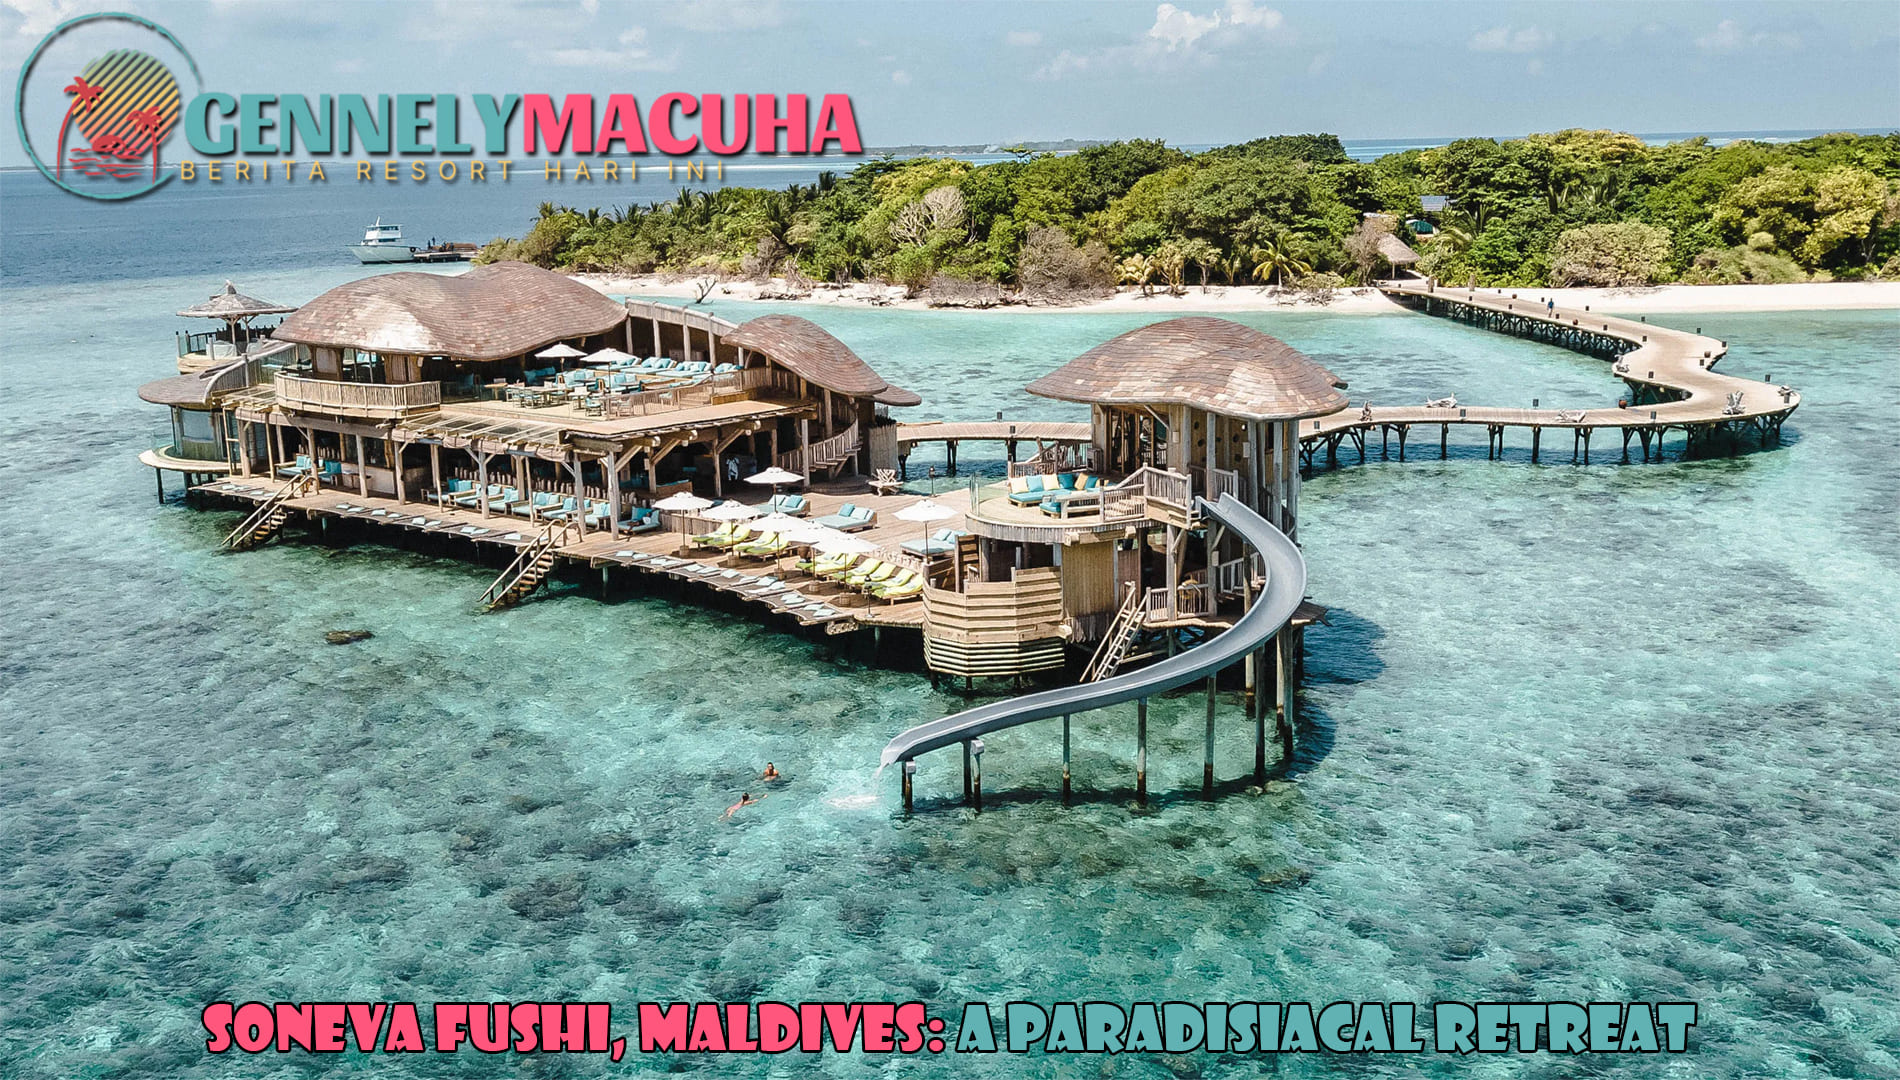 Soneva Fushi, Maldives: A Paradisiacal Retreat